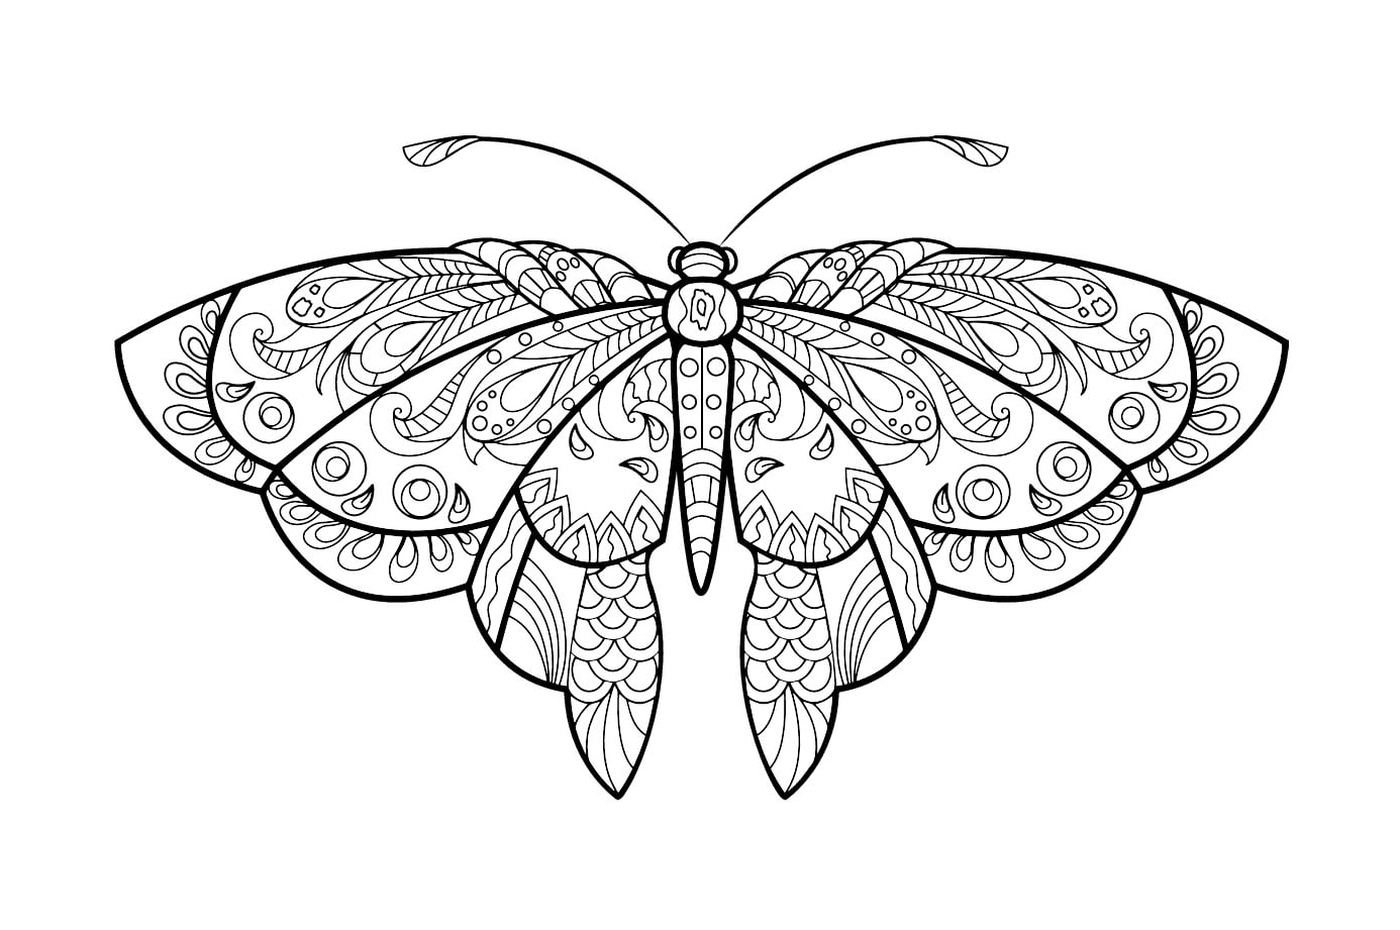  Бабочка с прекрасными рисунками 